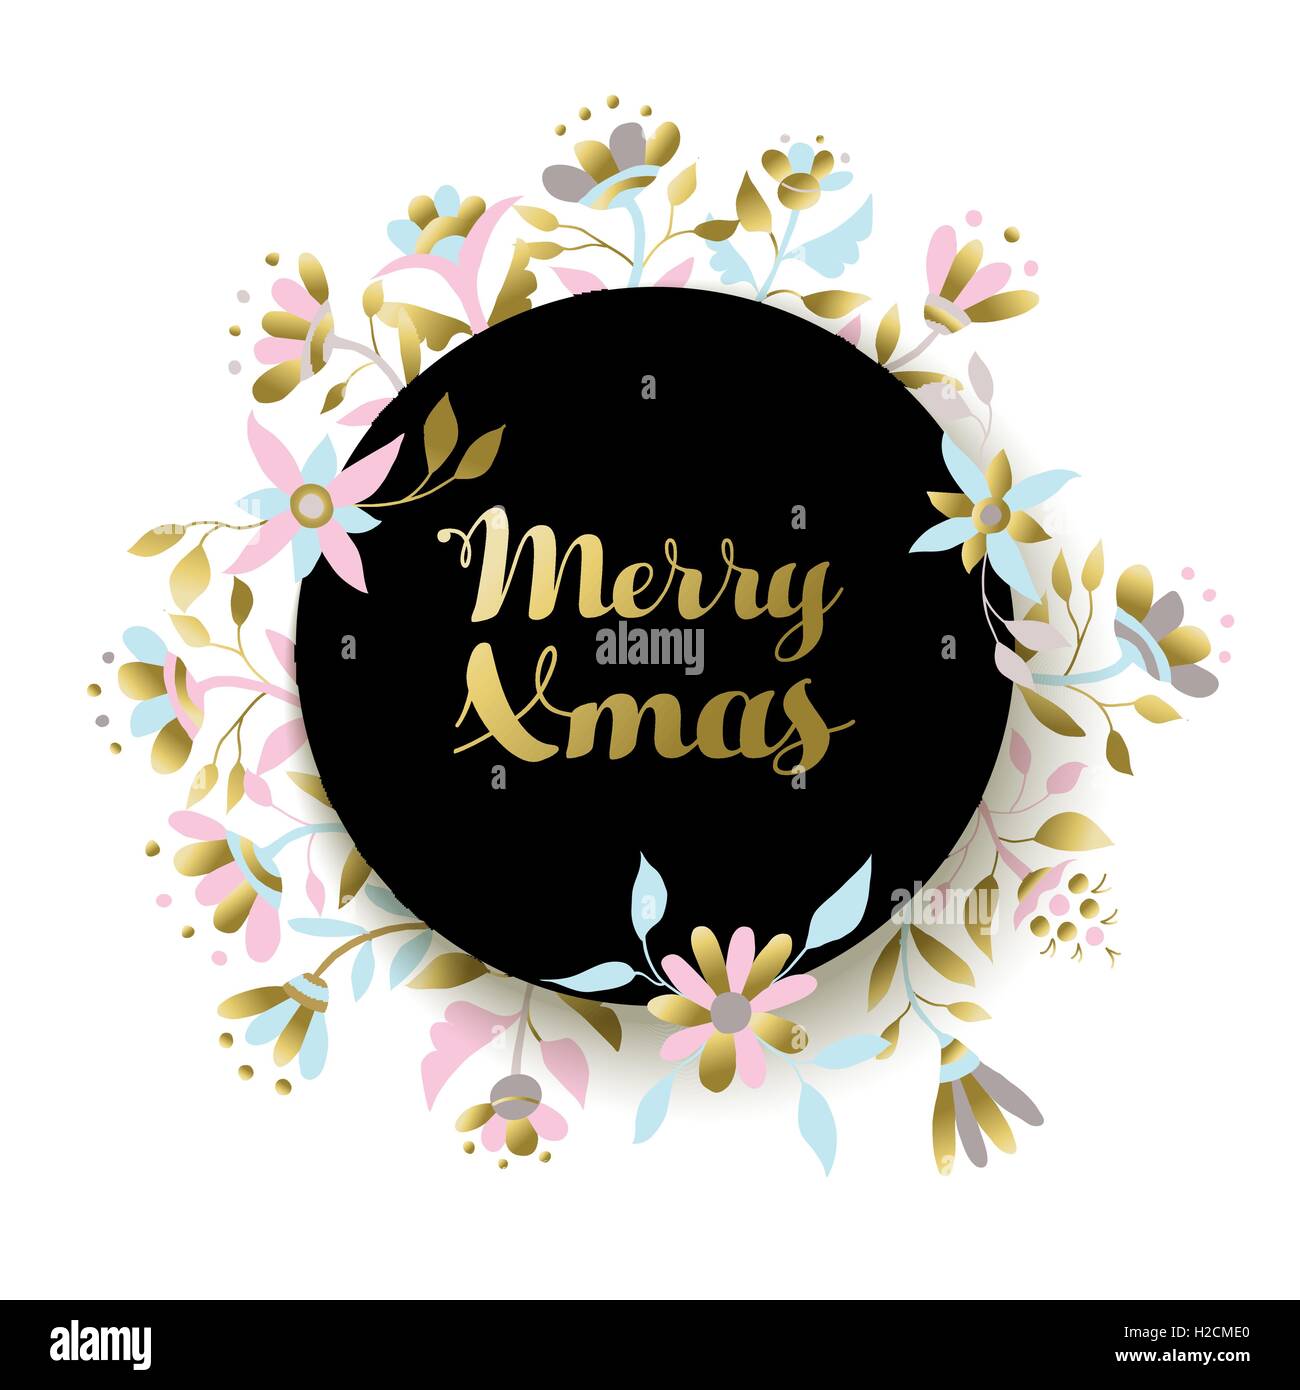 Frohe Weihnachten gold-Design mit Kranz Blumenschmuck, florale Xmas-Illustration für Poster oder Grußkarte. EPS10 Vektor. Stock Vektor